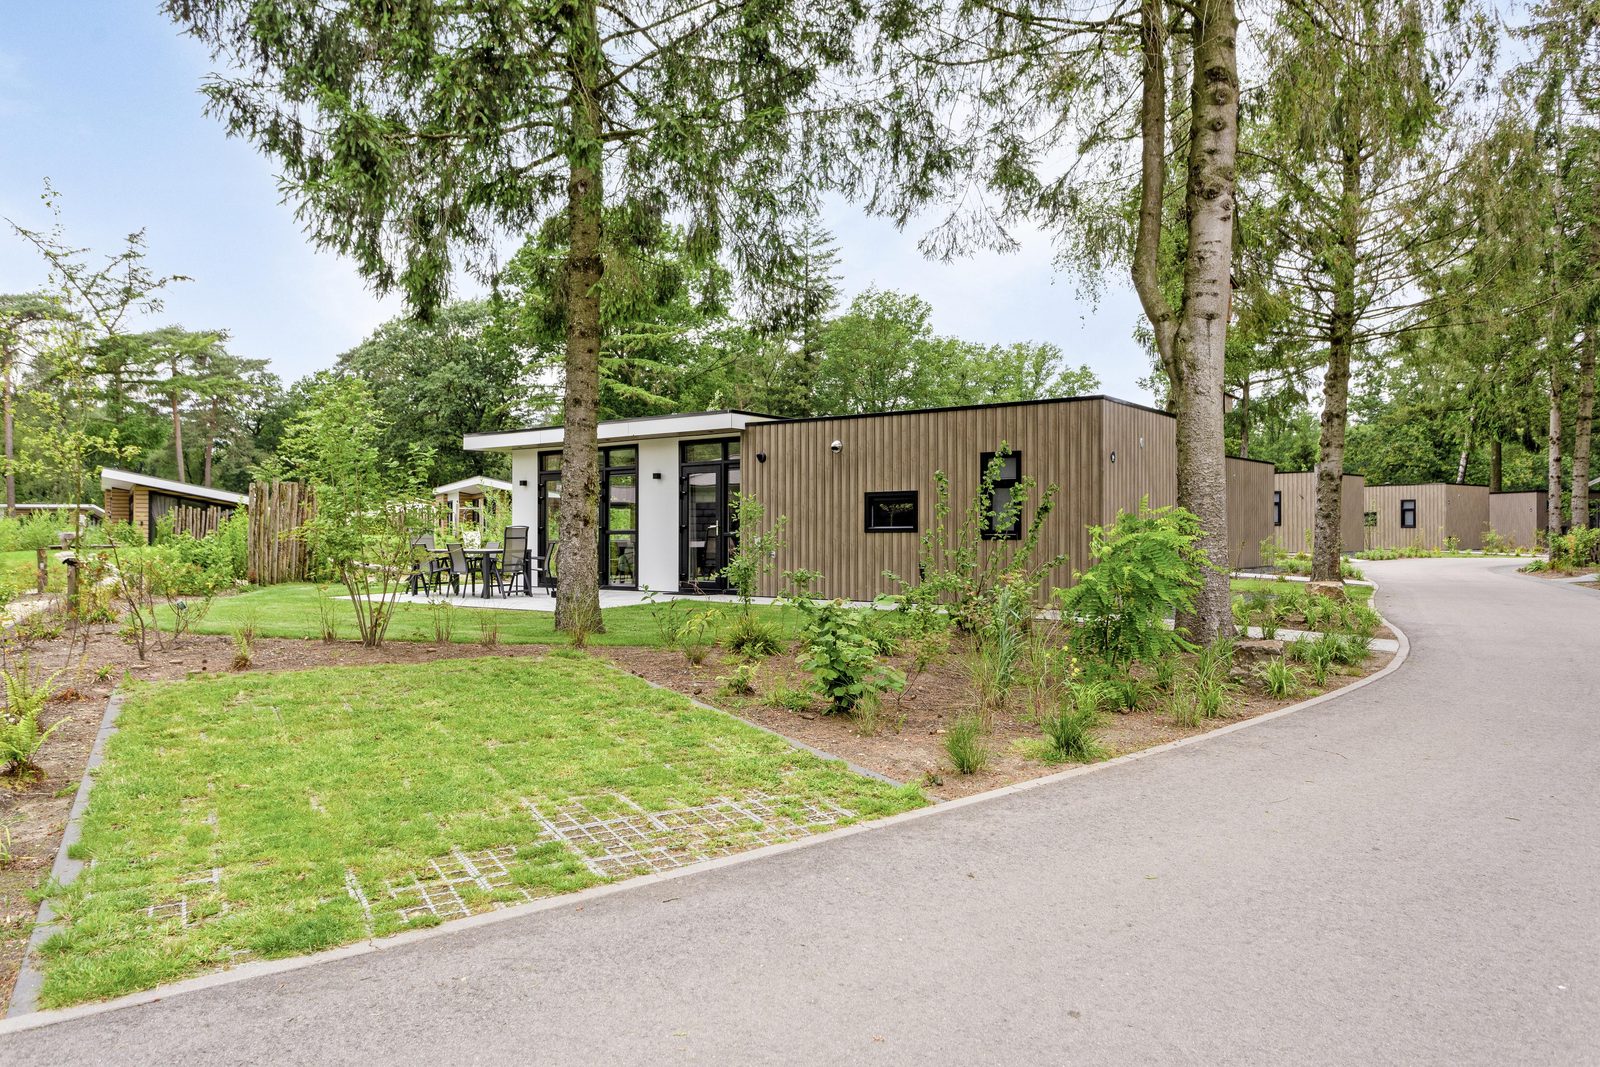 Tiny house kopen Gelderland ▶︎